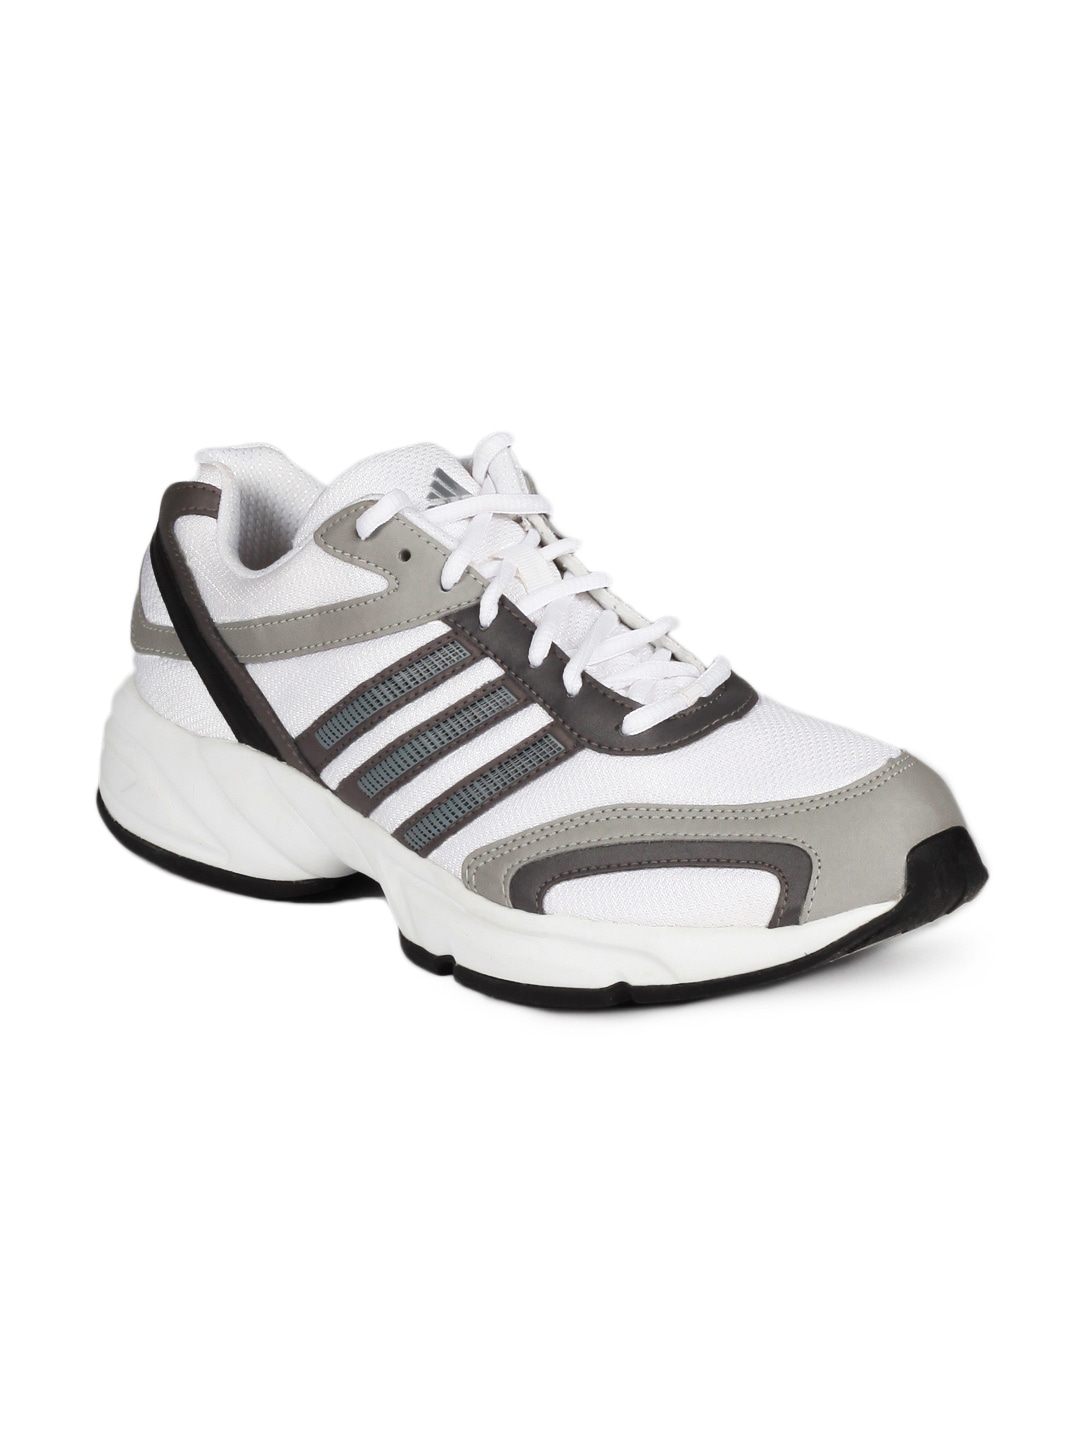 ADIDAS Men Desma White Sports Shoes